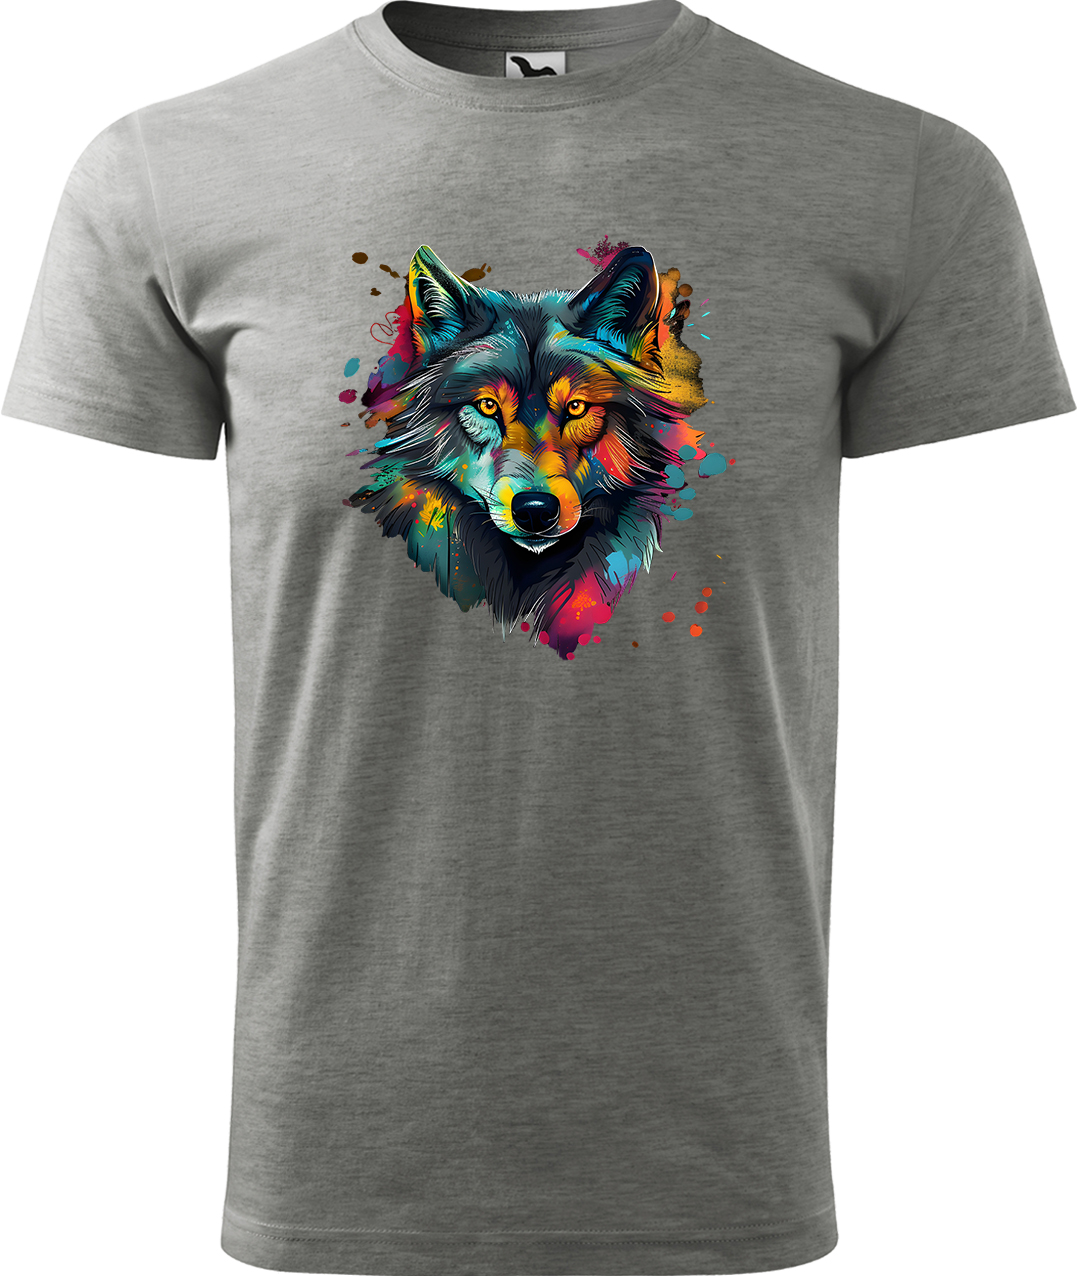 Pánské tričko s vlkem - Malovaný vlk Velikost: 2XL, Barva: Tmavě šedý melír (12), Střih: pánský